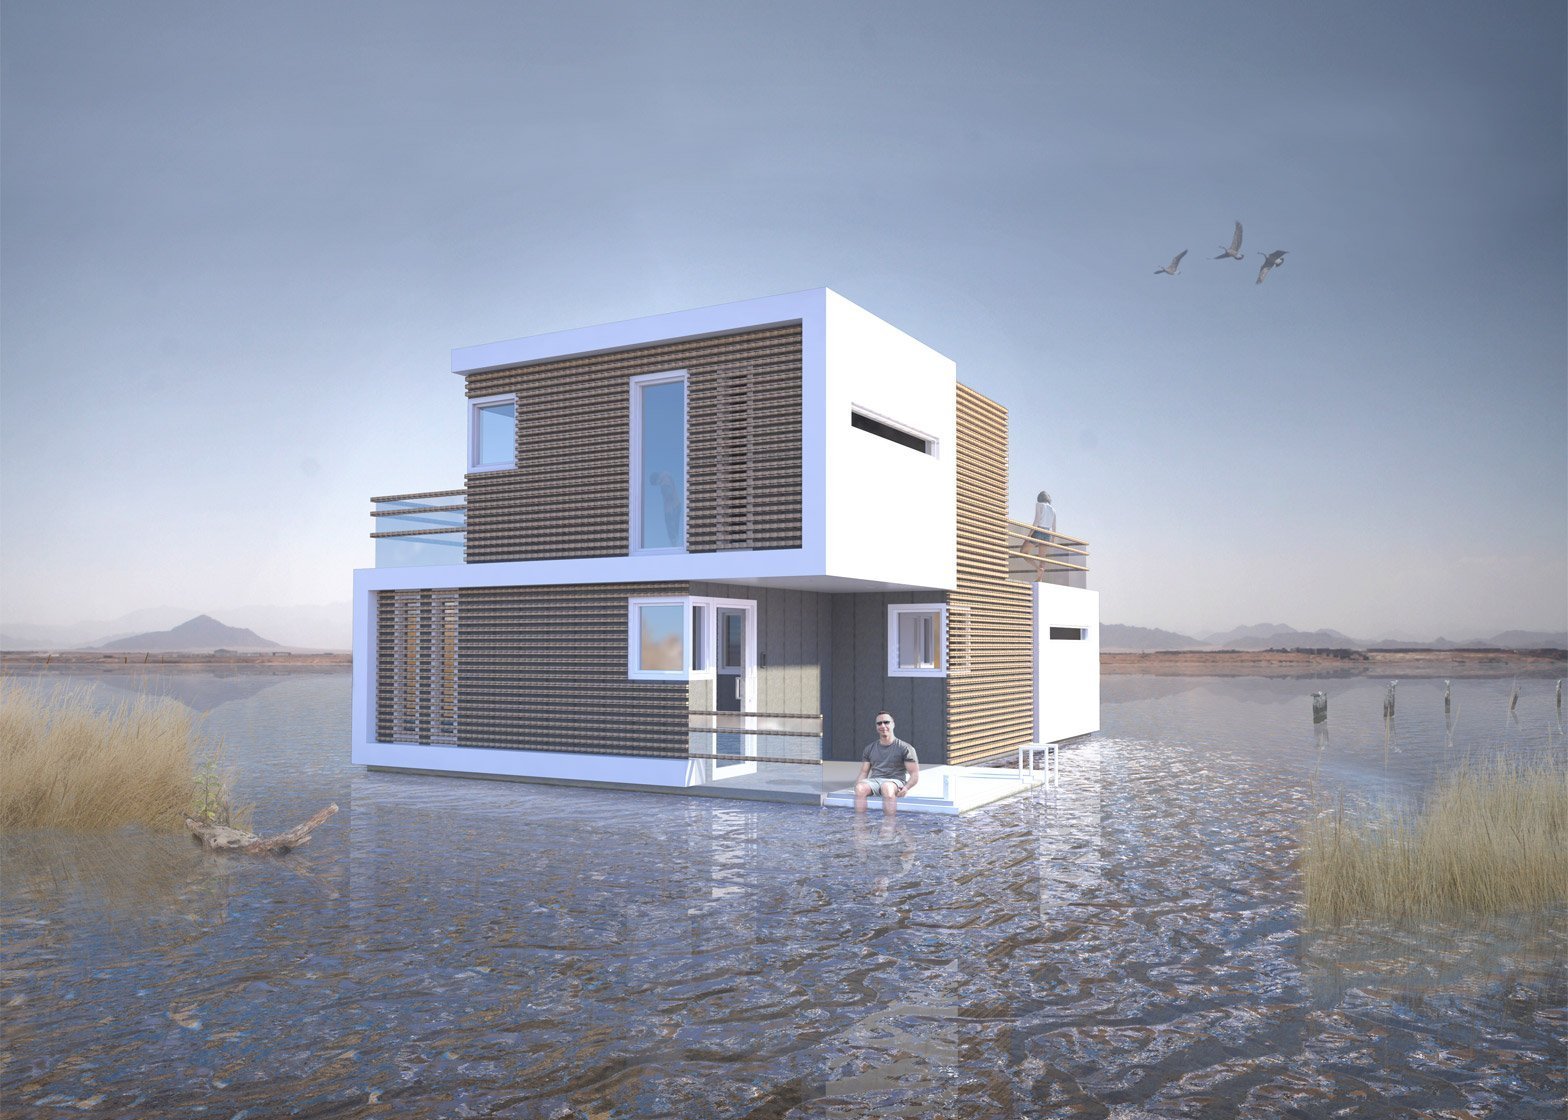 Плавучий дом для двоих в Нидерландах: в случае развода жилье без труда делится на 2 части